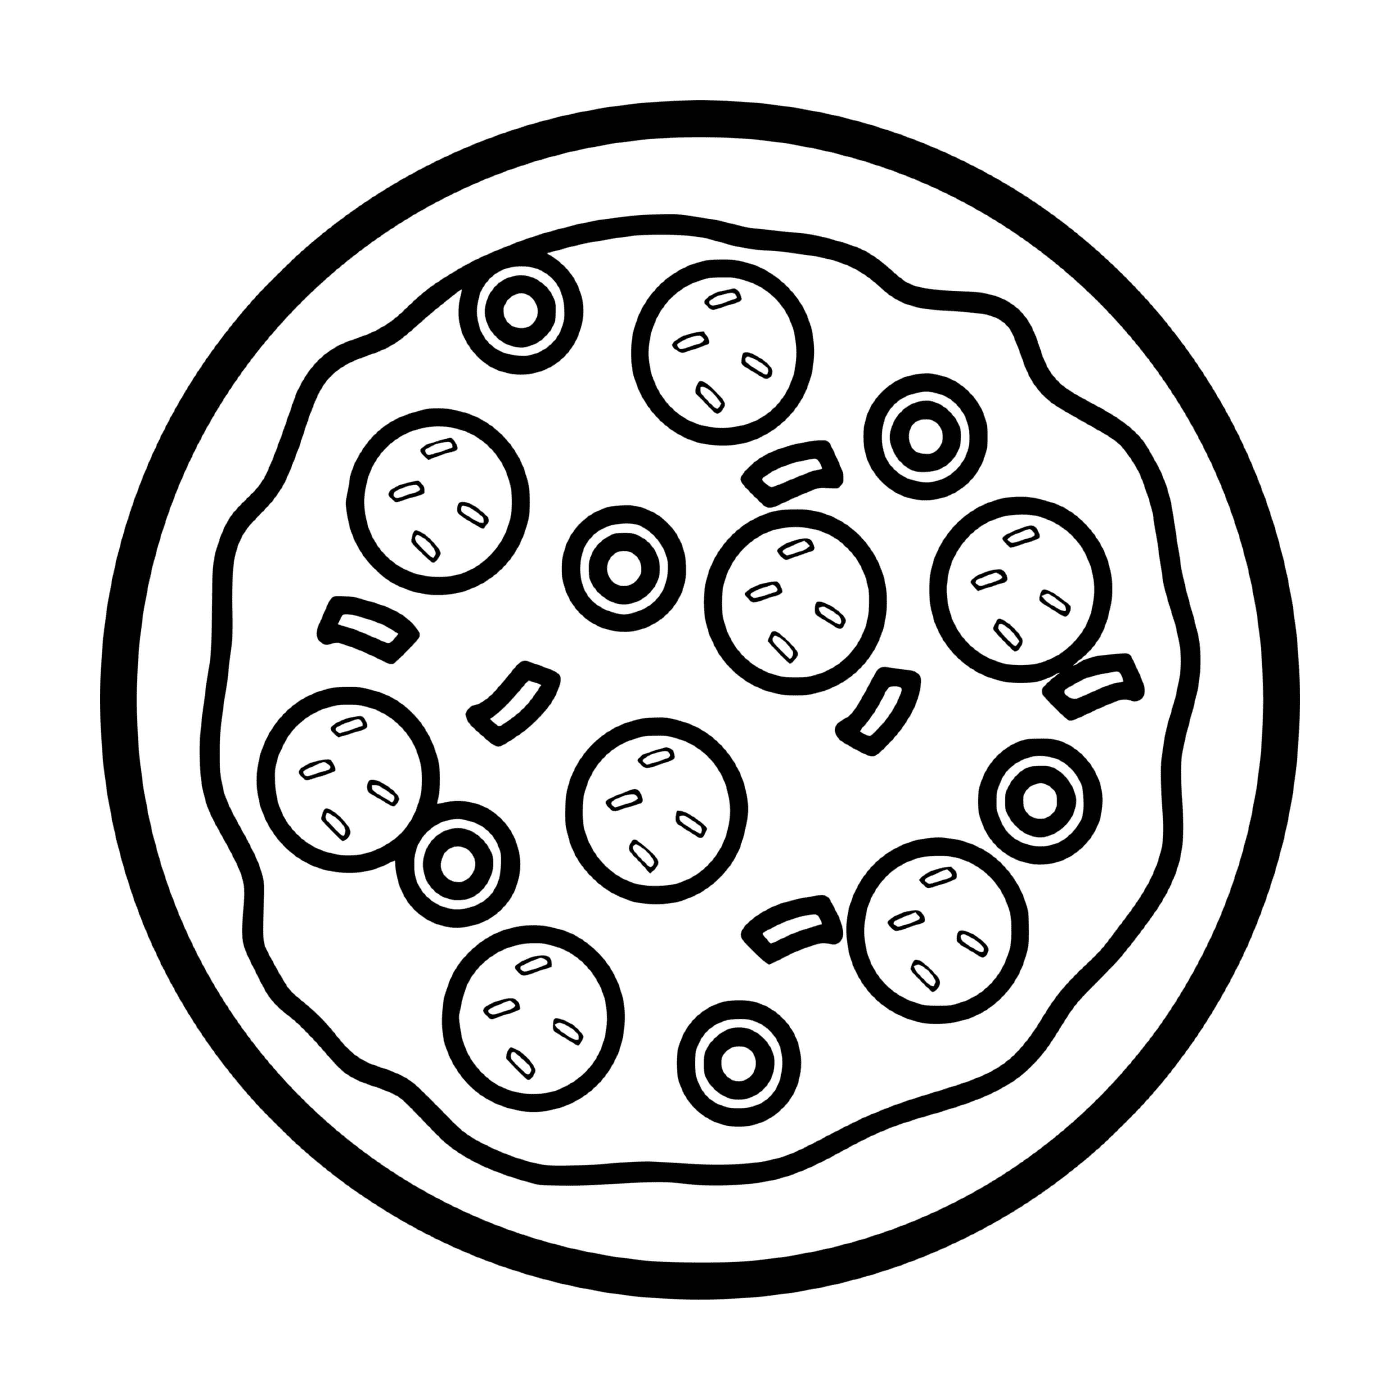  Una pizza pepperoni queso de oliva 